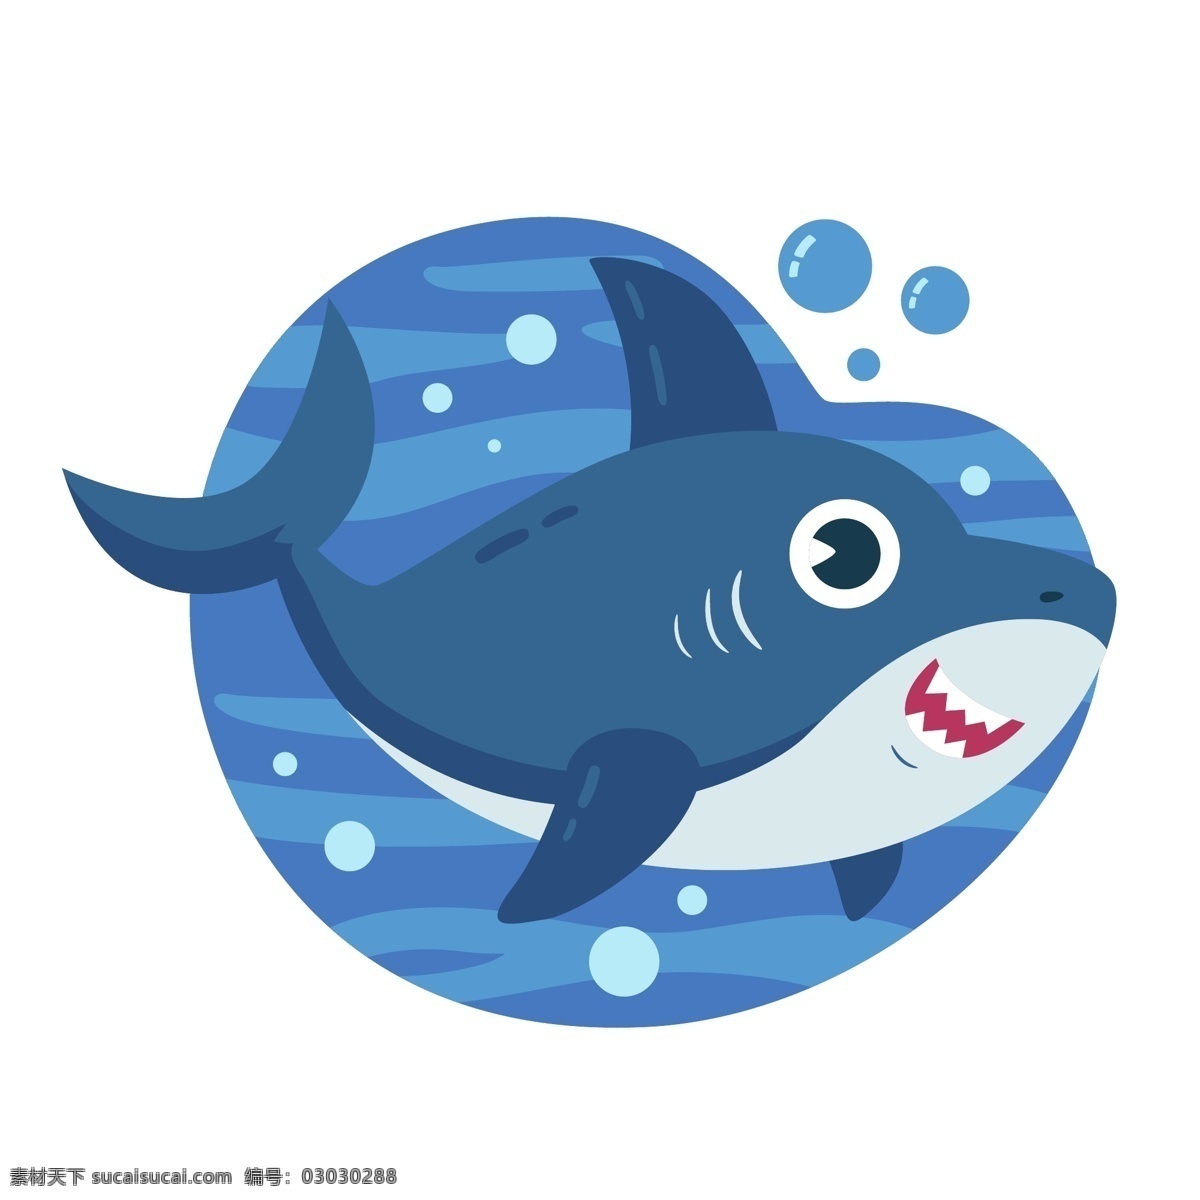 鲨鱼图片 鲨鱼 海洋生物 海底世界 手绘 插画 ai矢量